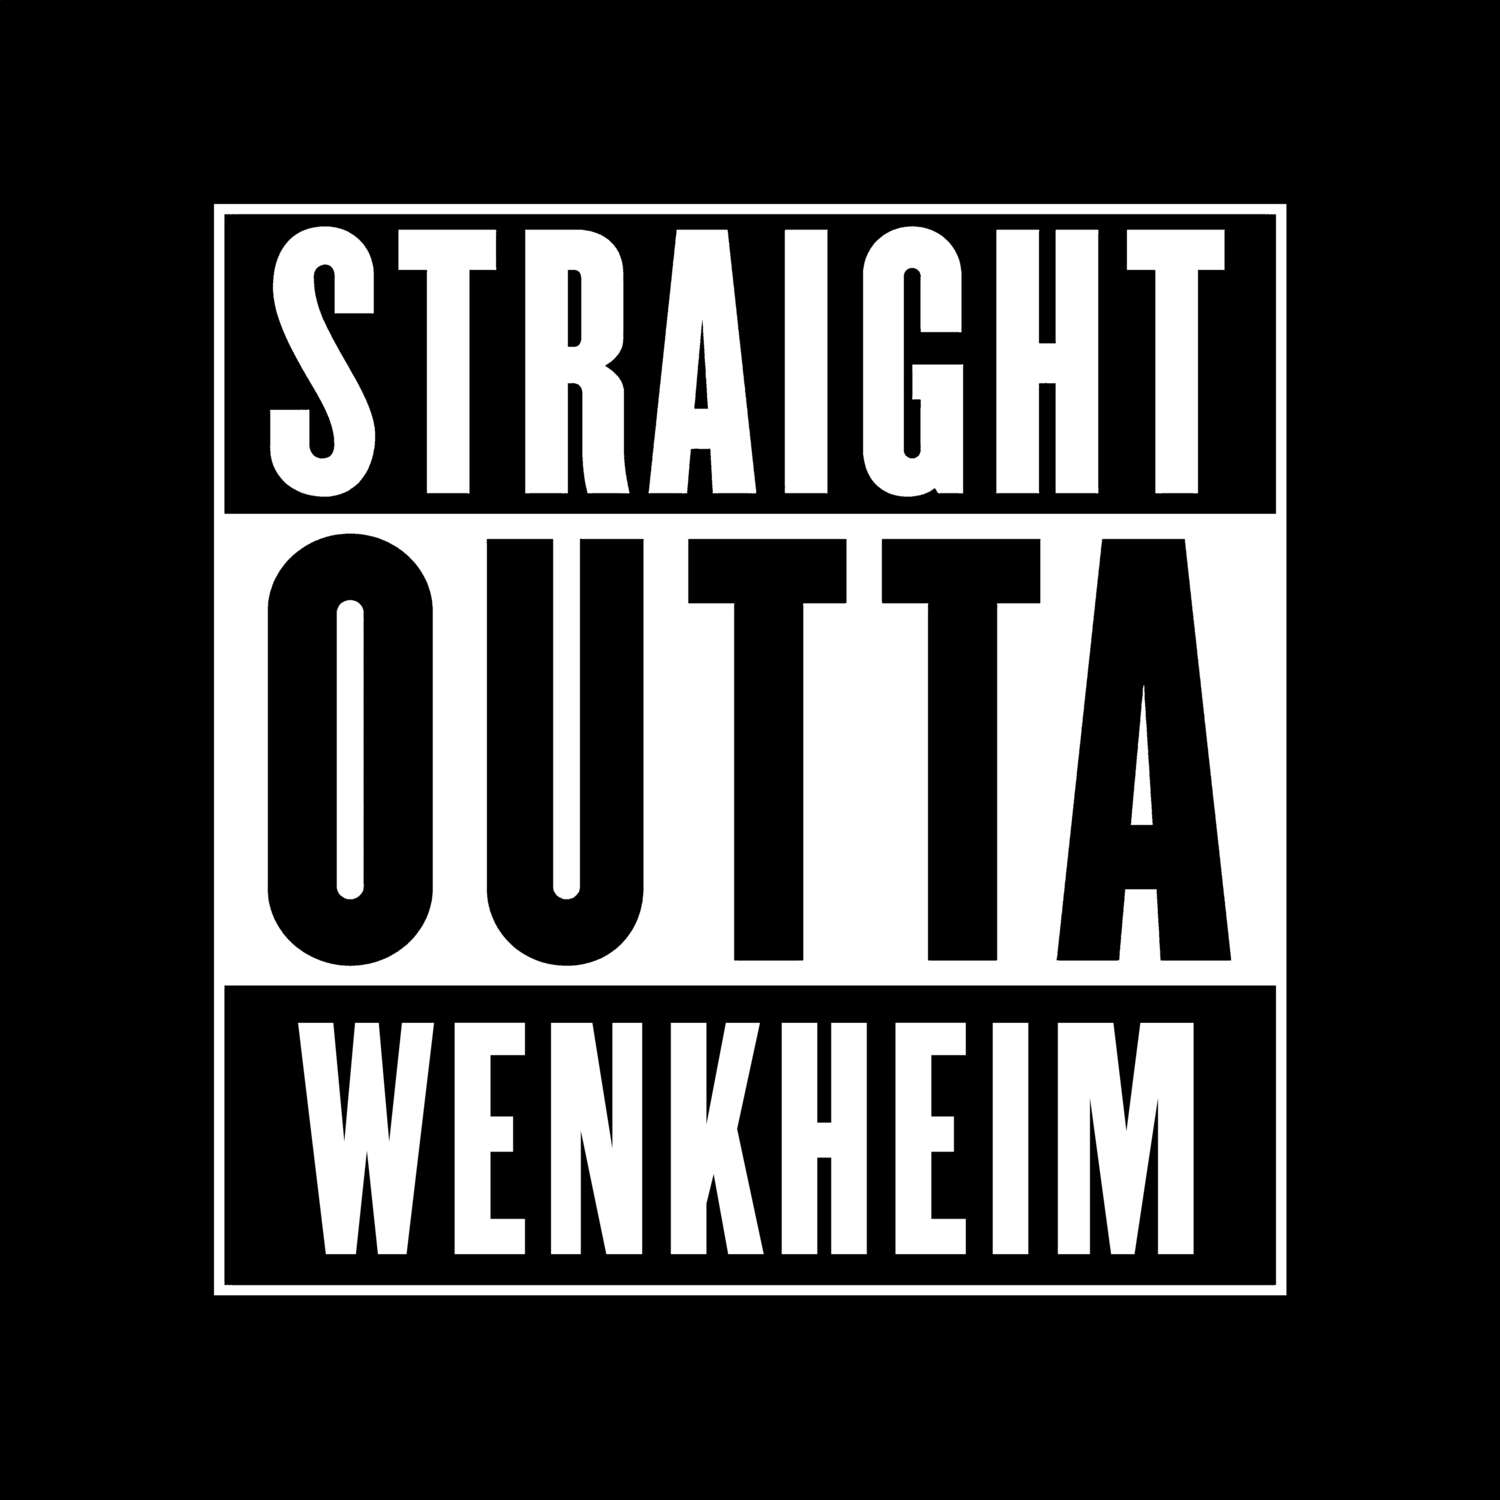 Wenkheim T-Shirt »Straight Outta«